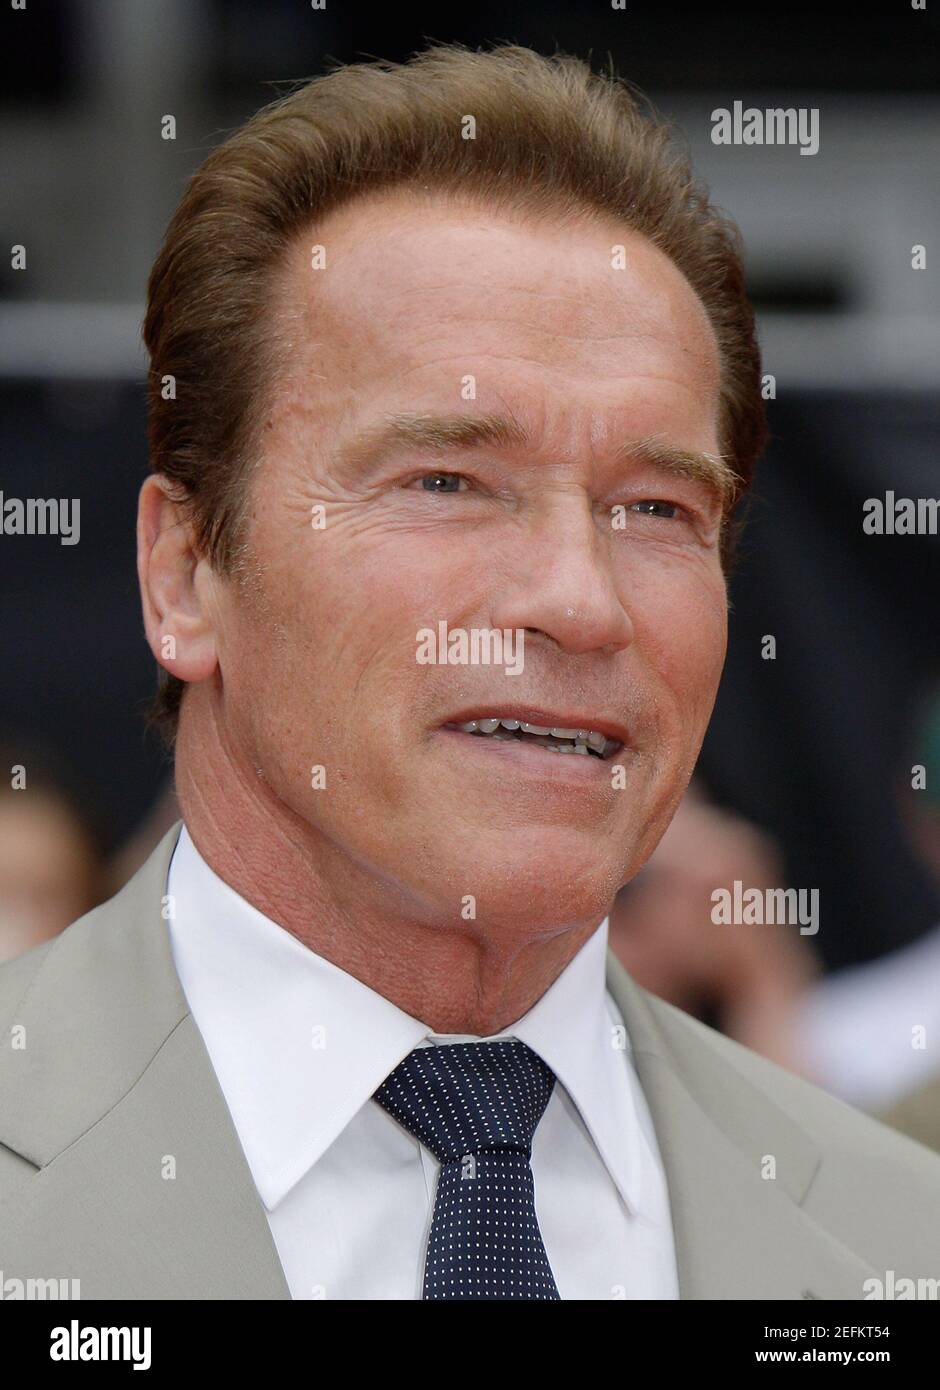 Londres, Royaume-Uni. 13 août 2012. Arnold Schwarzenegger assiste à The Expendables 2 Back for War UK Premier à l'Empire Leicester Square, Londres. Crédit: S.A.M./Alay Banque D'Images